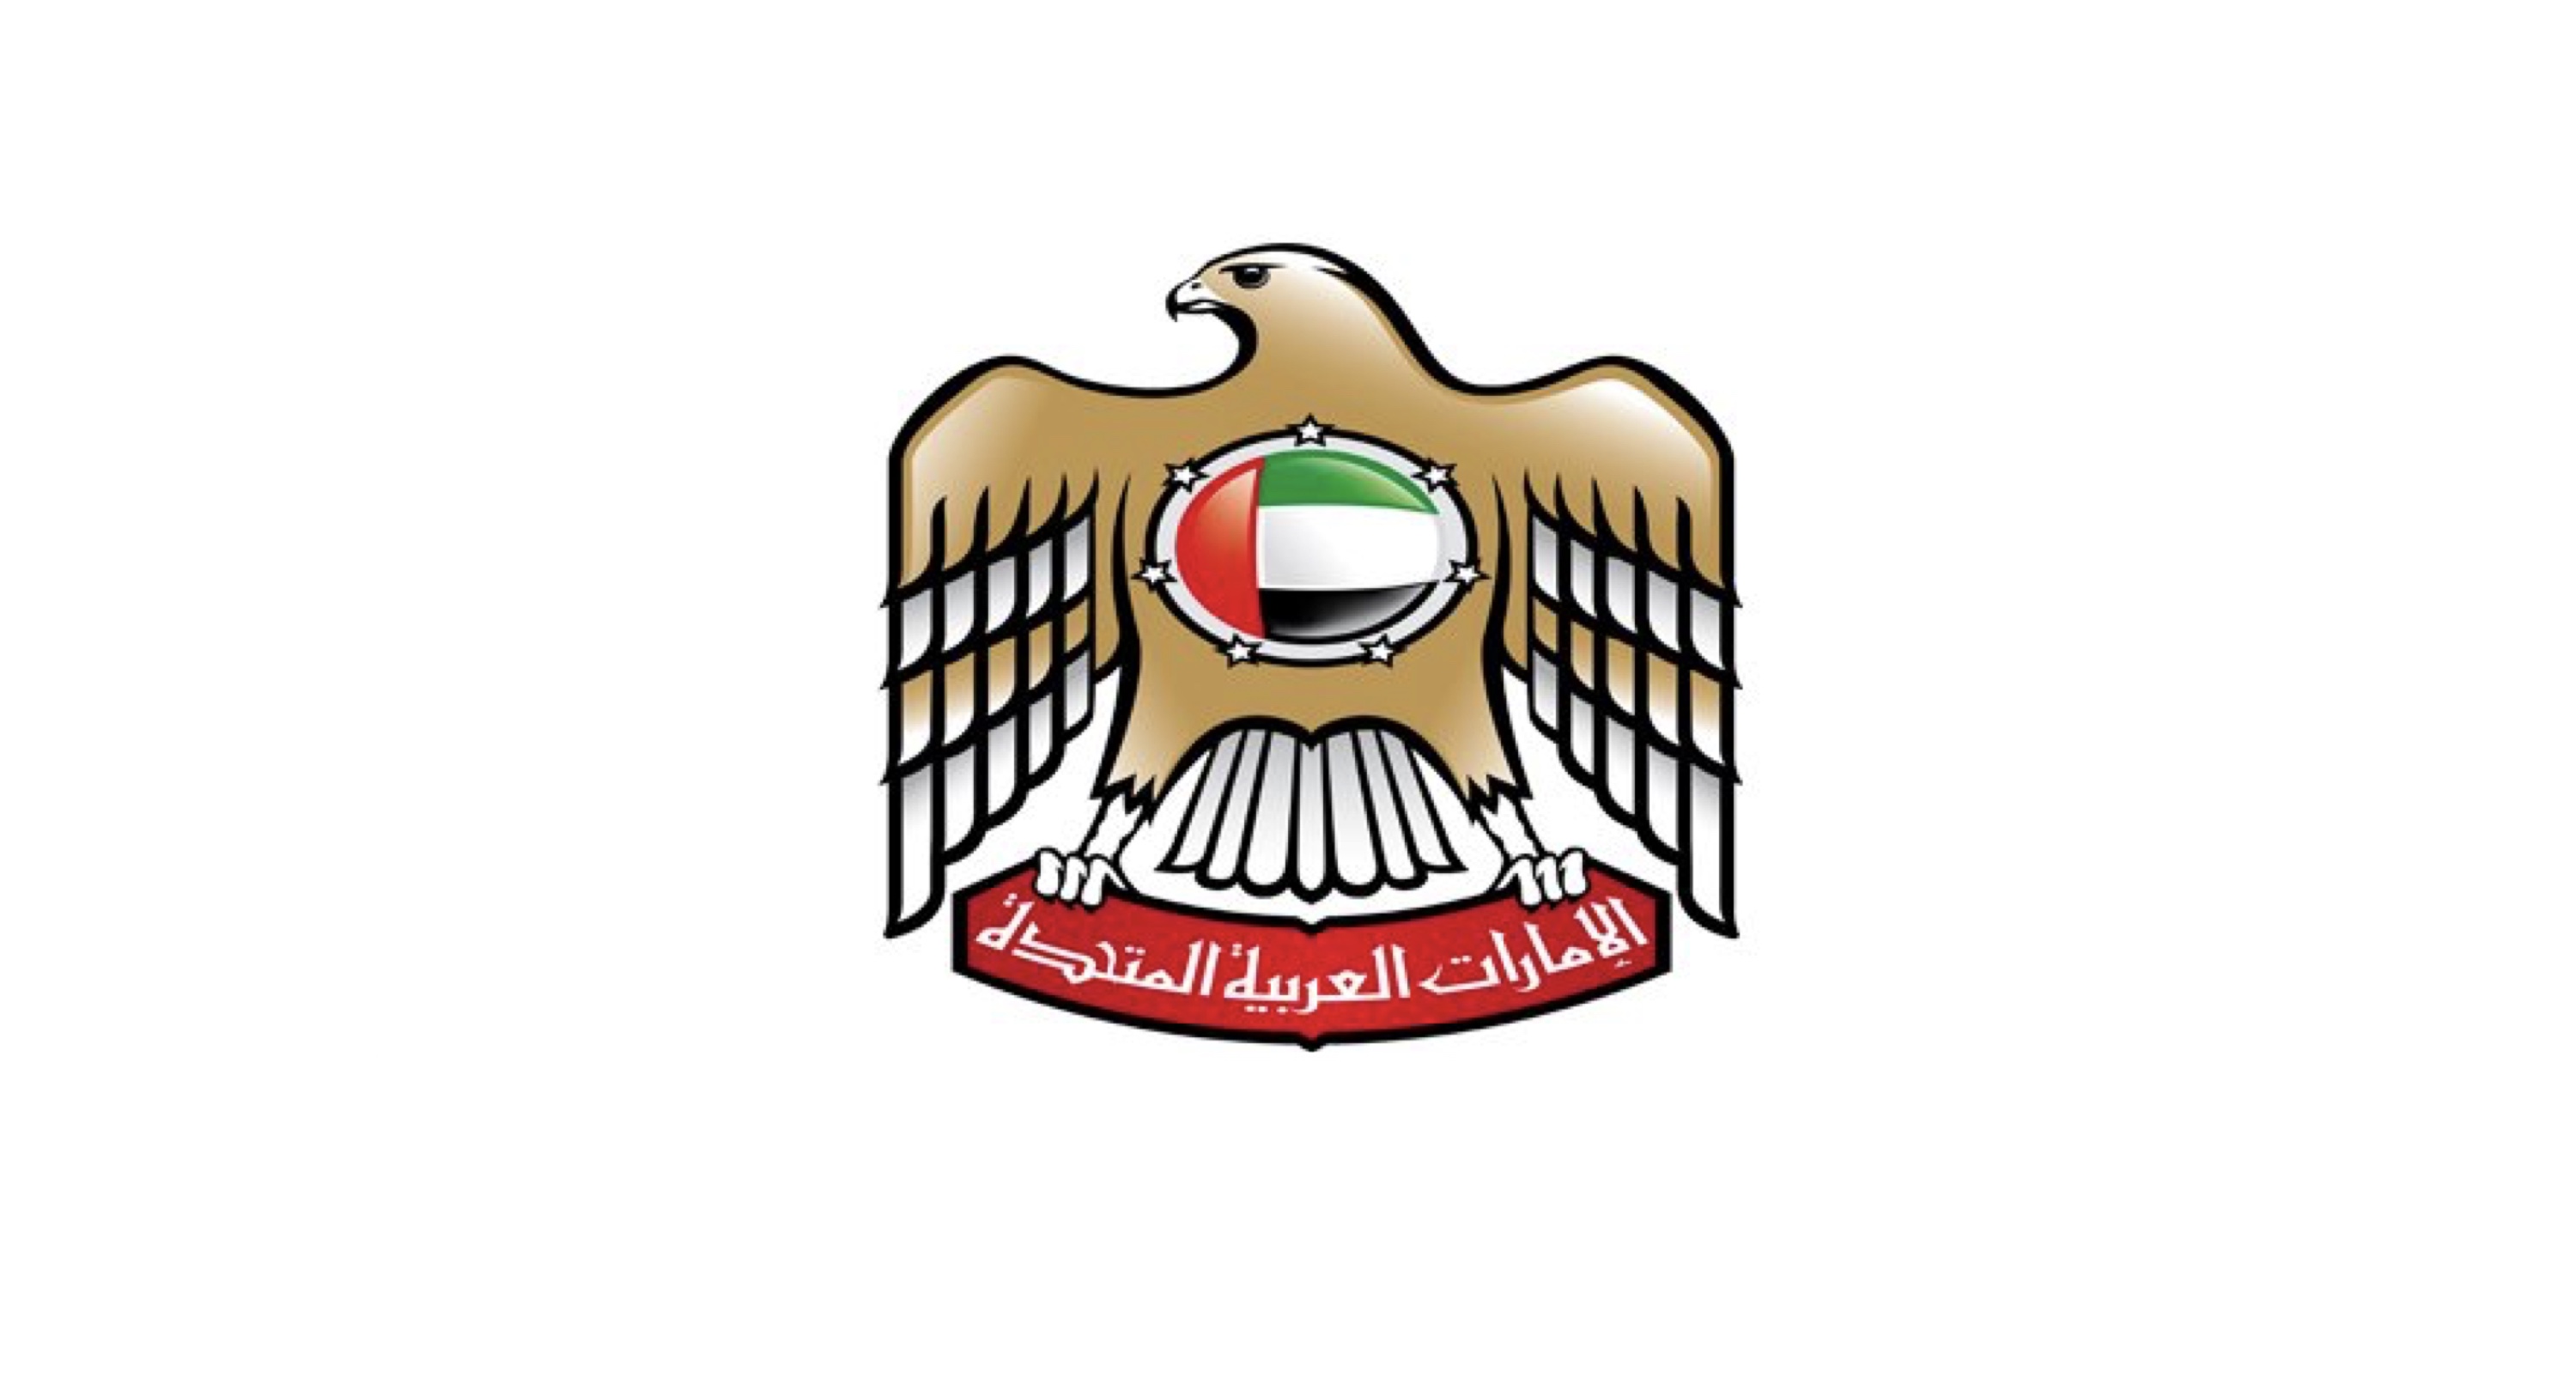 حكومة الإمارات تعلن عودة العمل في جميع الوزارات والهيئات والمؤسسات الاتحادية بنسبة 30% اعتباراً من يوم الأحد